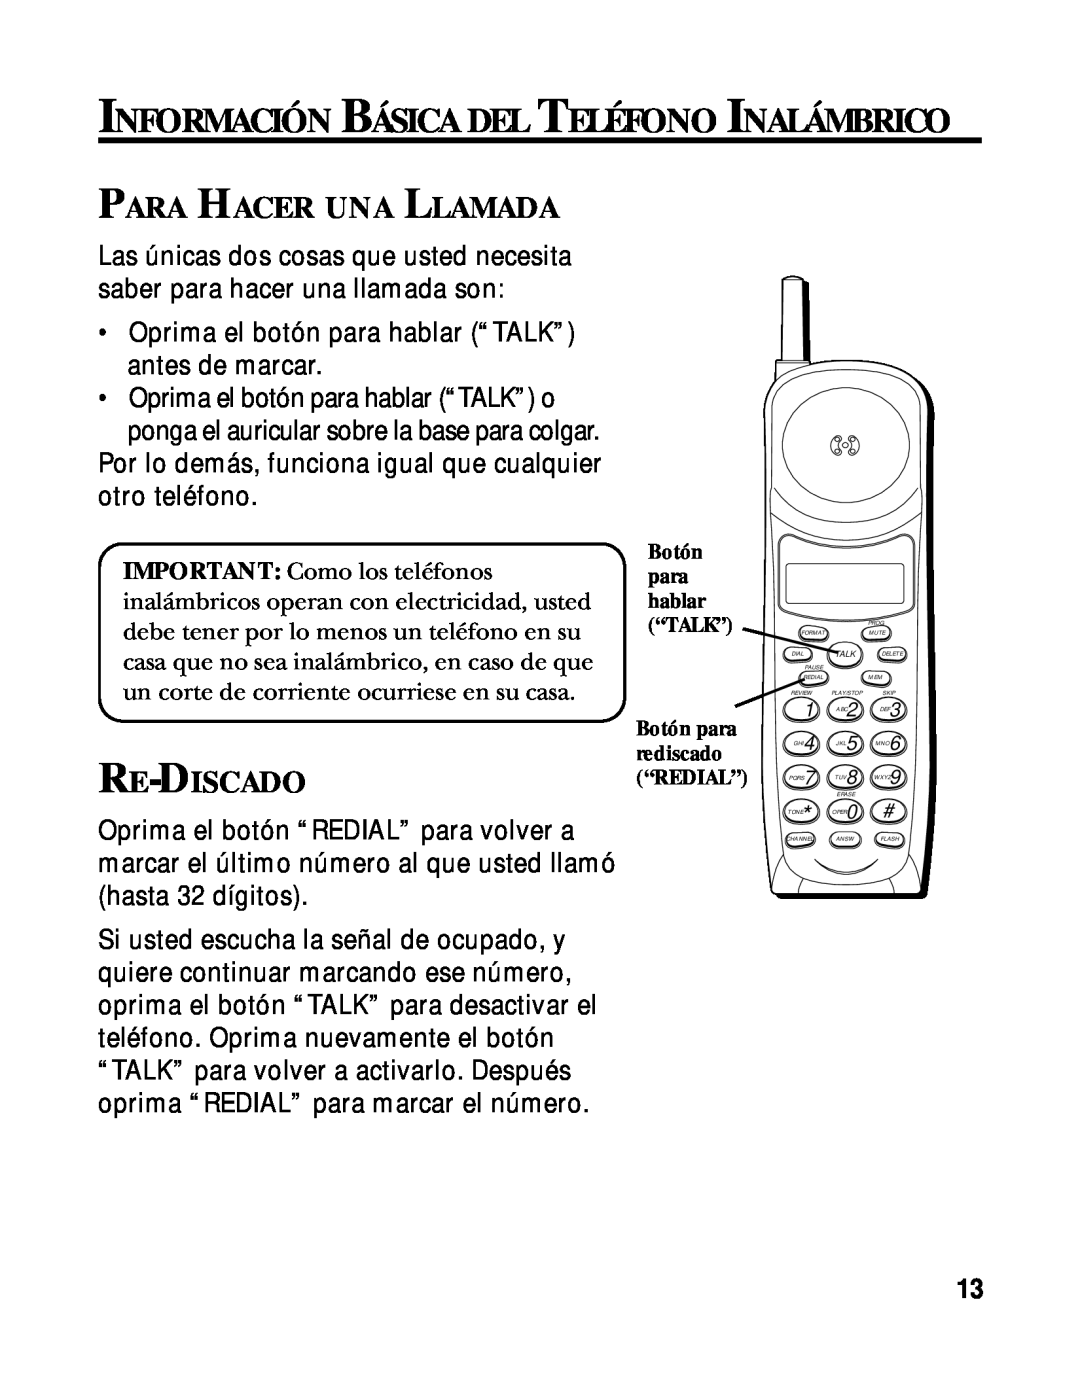 RCA 900 MHz manual Información Básica Del Teléfono Inalámbrico, Para Hacer Una Llamada, Re-Discado 